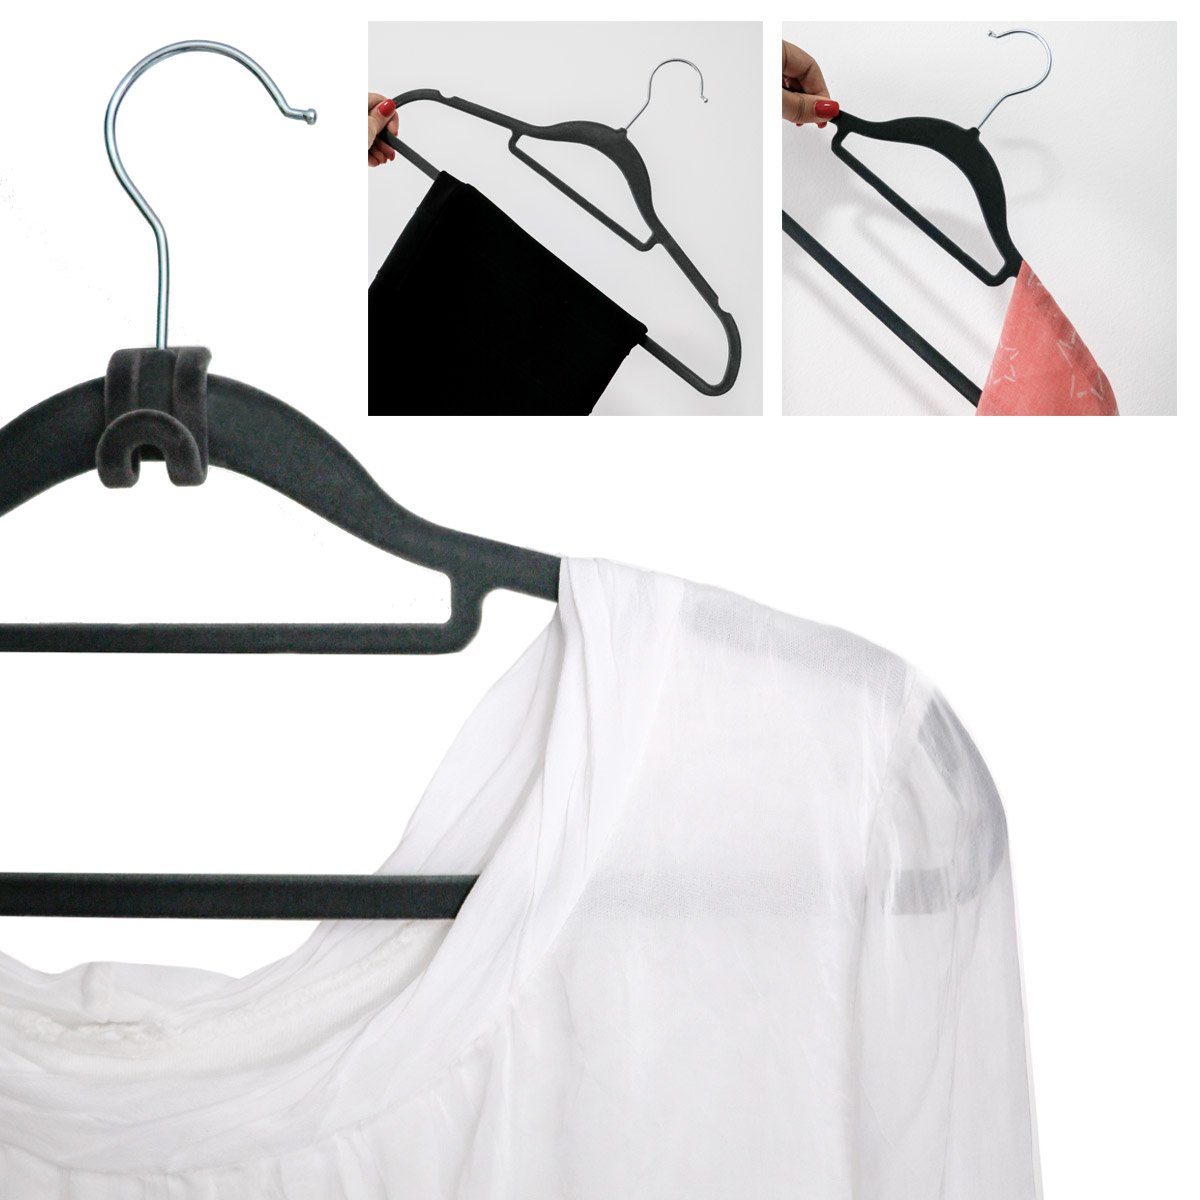 Rutschfest Haken-Organizer grau Samt Kleiderbügel eyepower 10 Antirutsch, 20 Kleiderbügel Hemden-Bügel